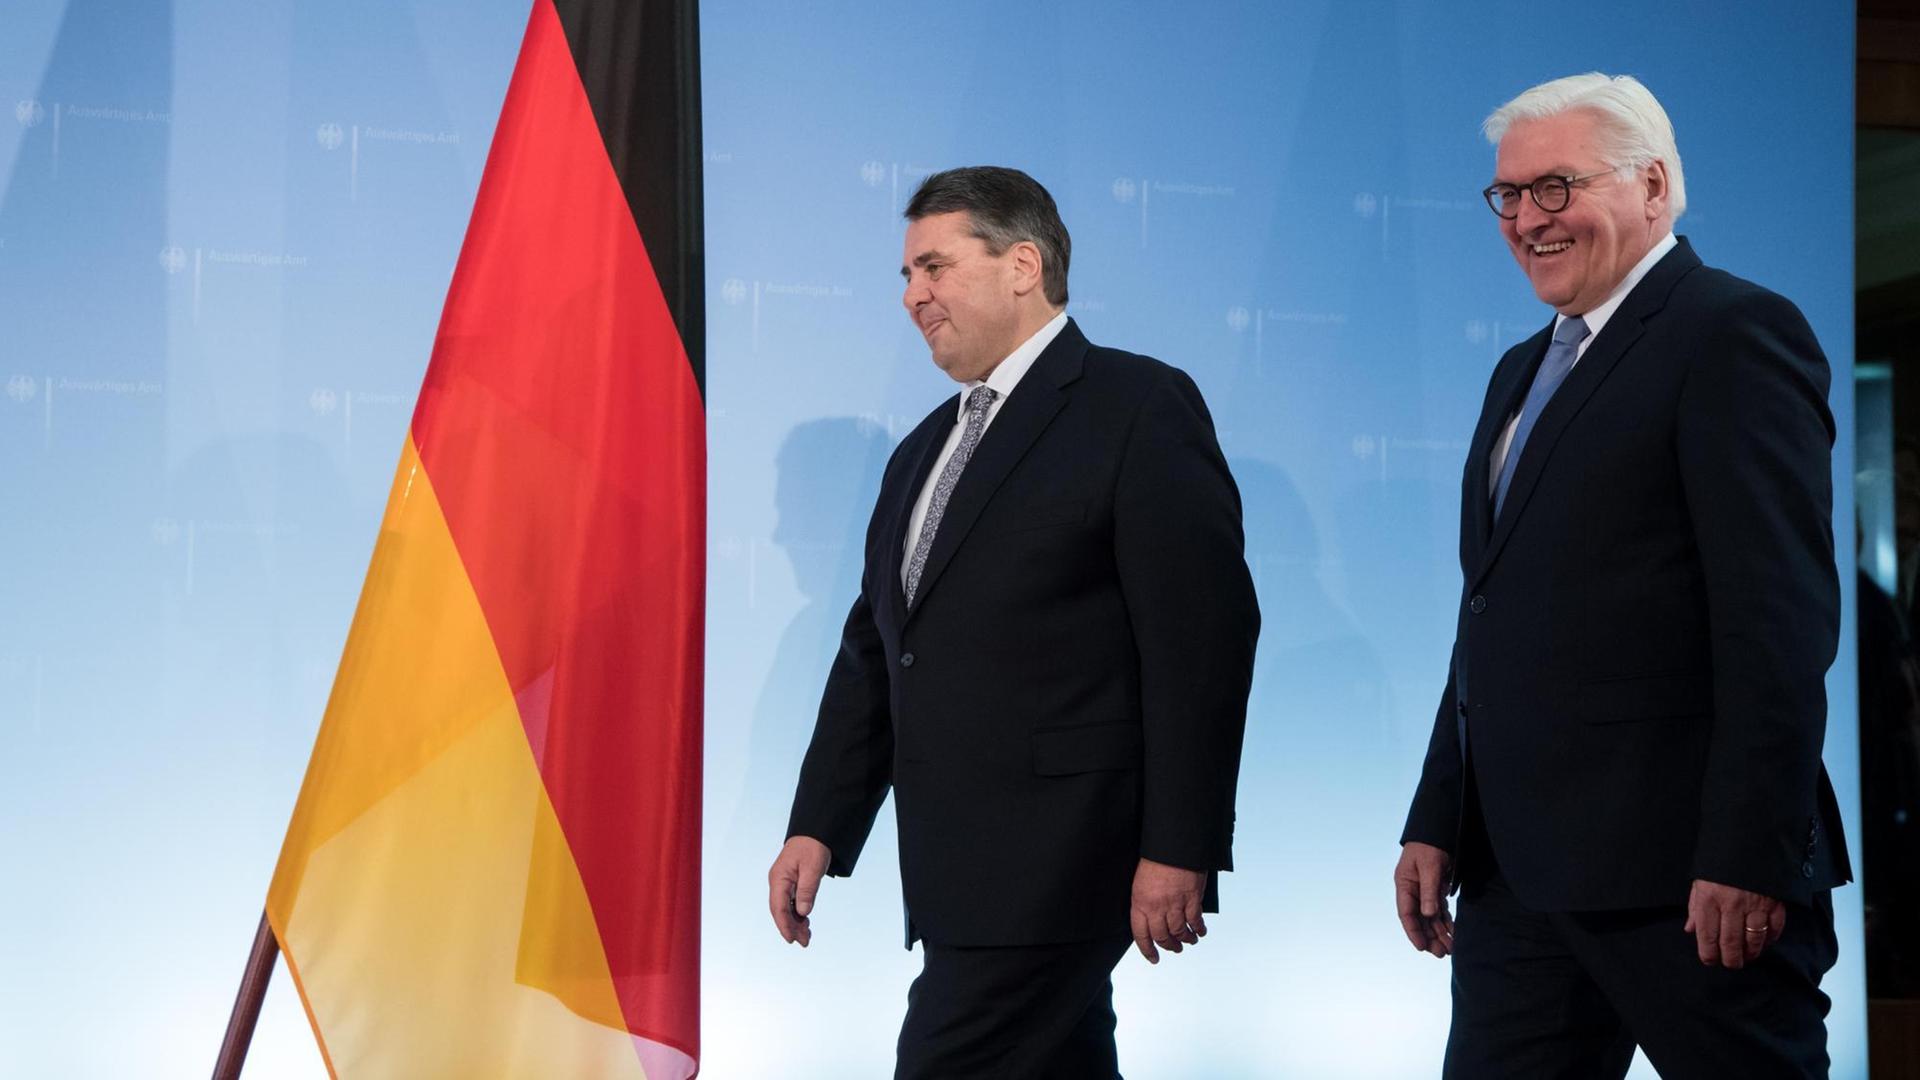 Sigmar Gabriel und Frank-Walter Steinmeier gehen an einer Deutschlandfahne vorbei.